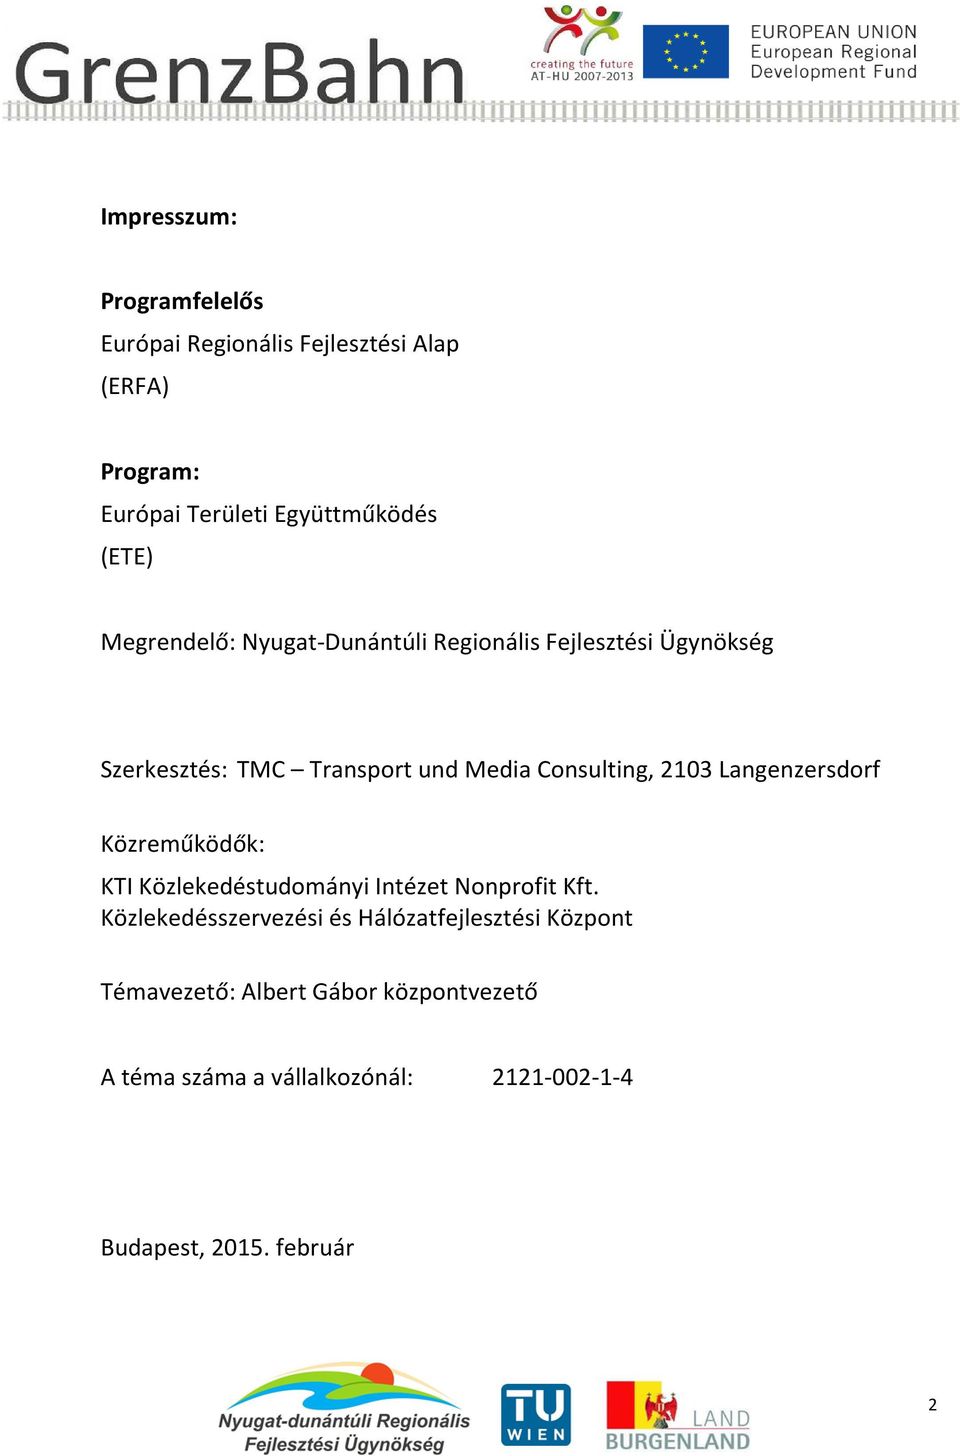 Langenzersdorf Közreműködők: KTI Közlekedéstudományi Intézet Nonprofit Kft.